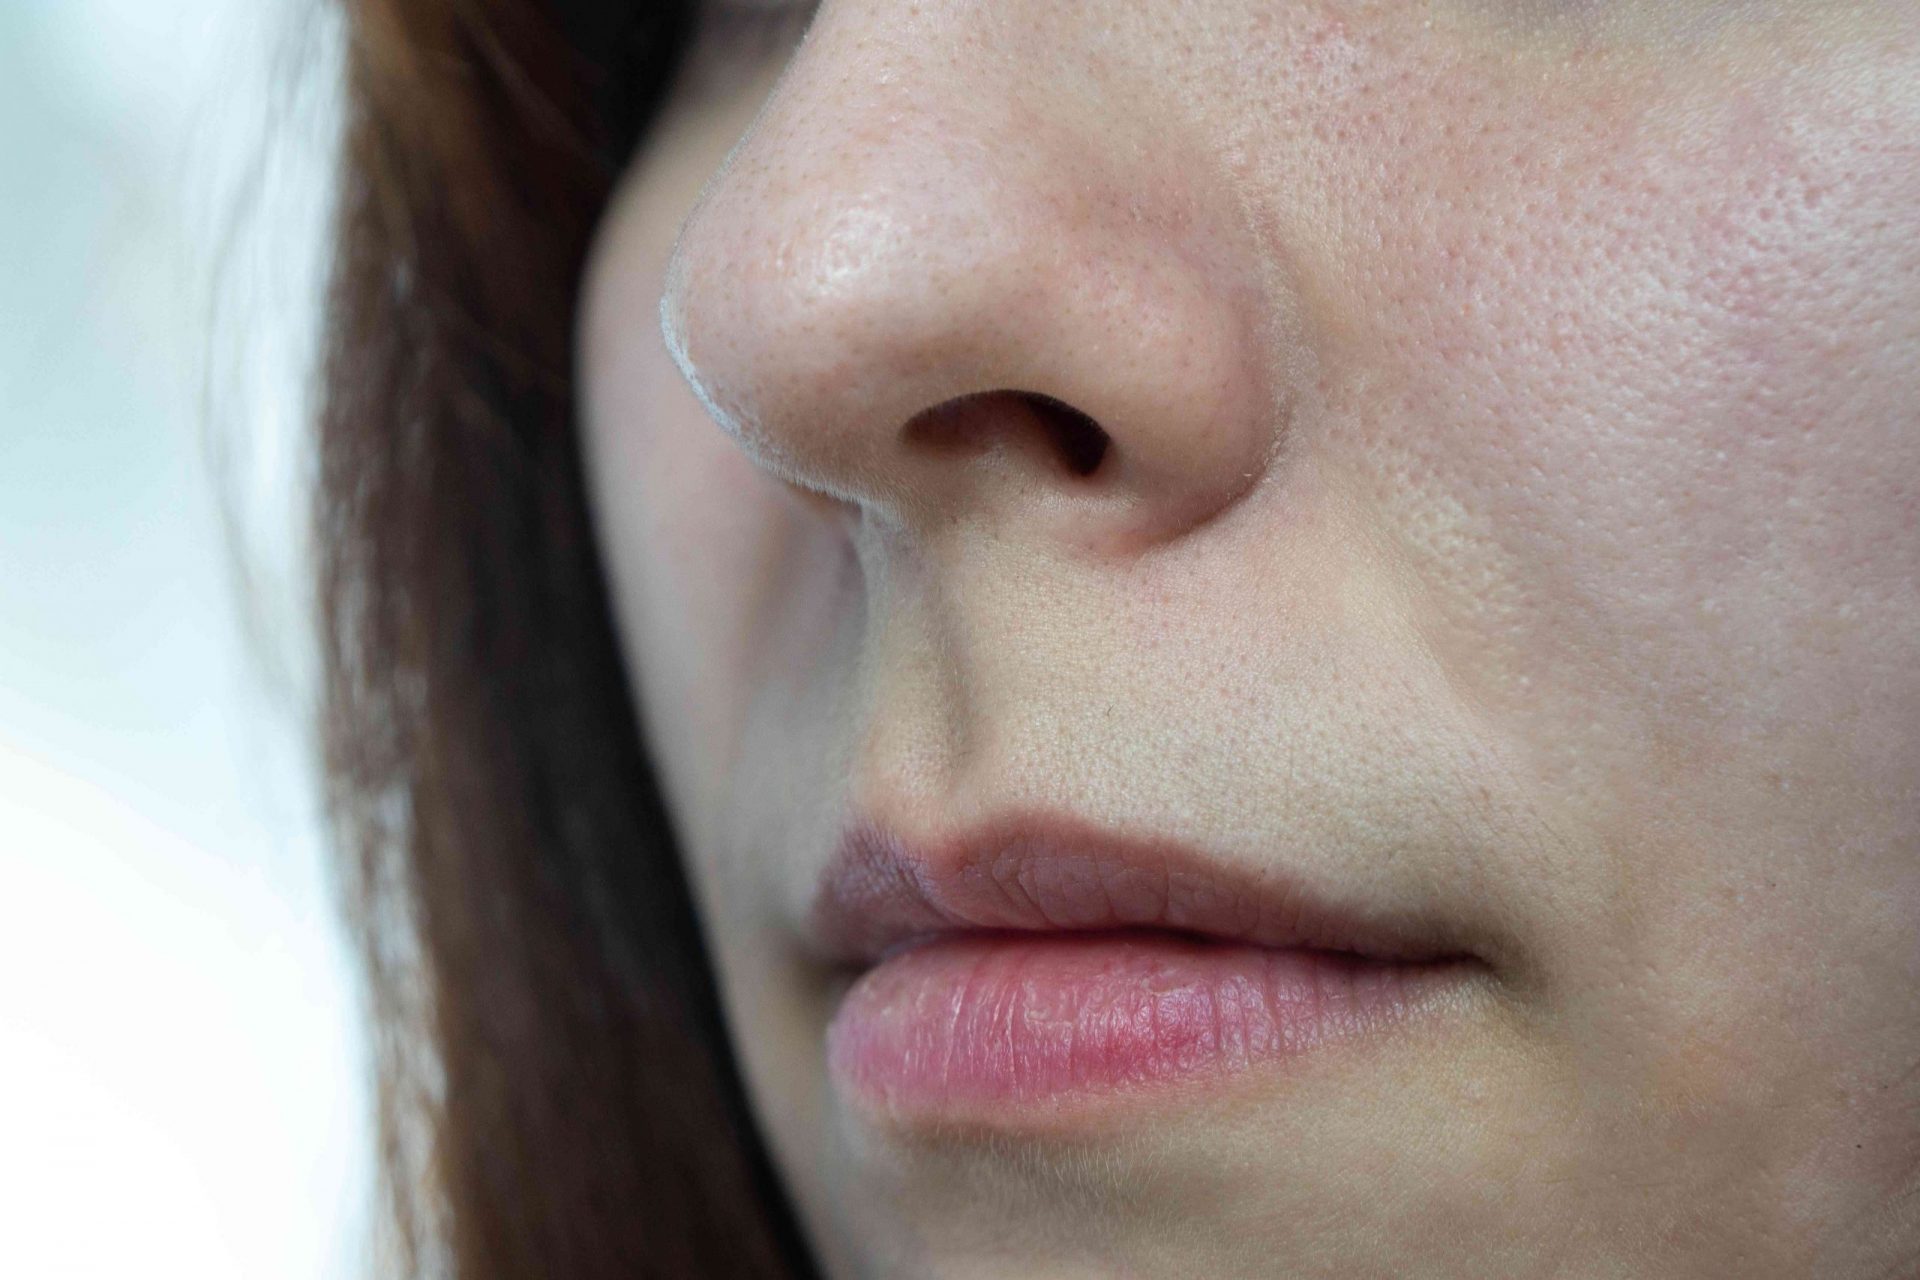 foto de cerca de la boca y la nariz de una mujer en 3/4 de perfil